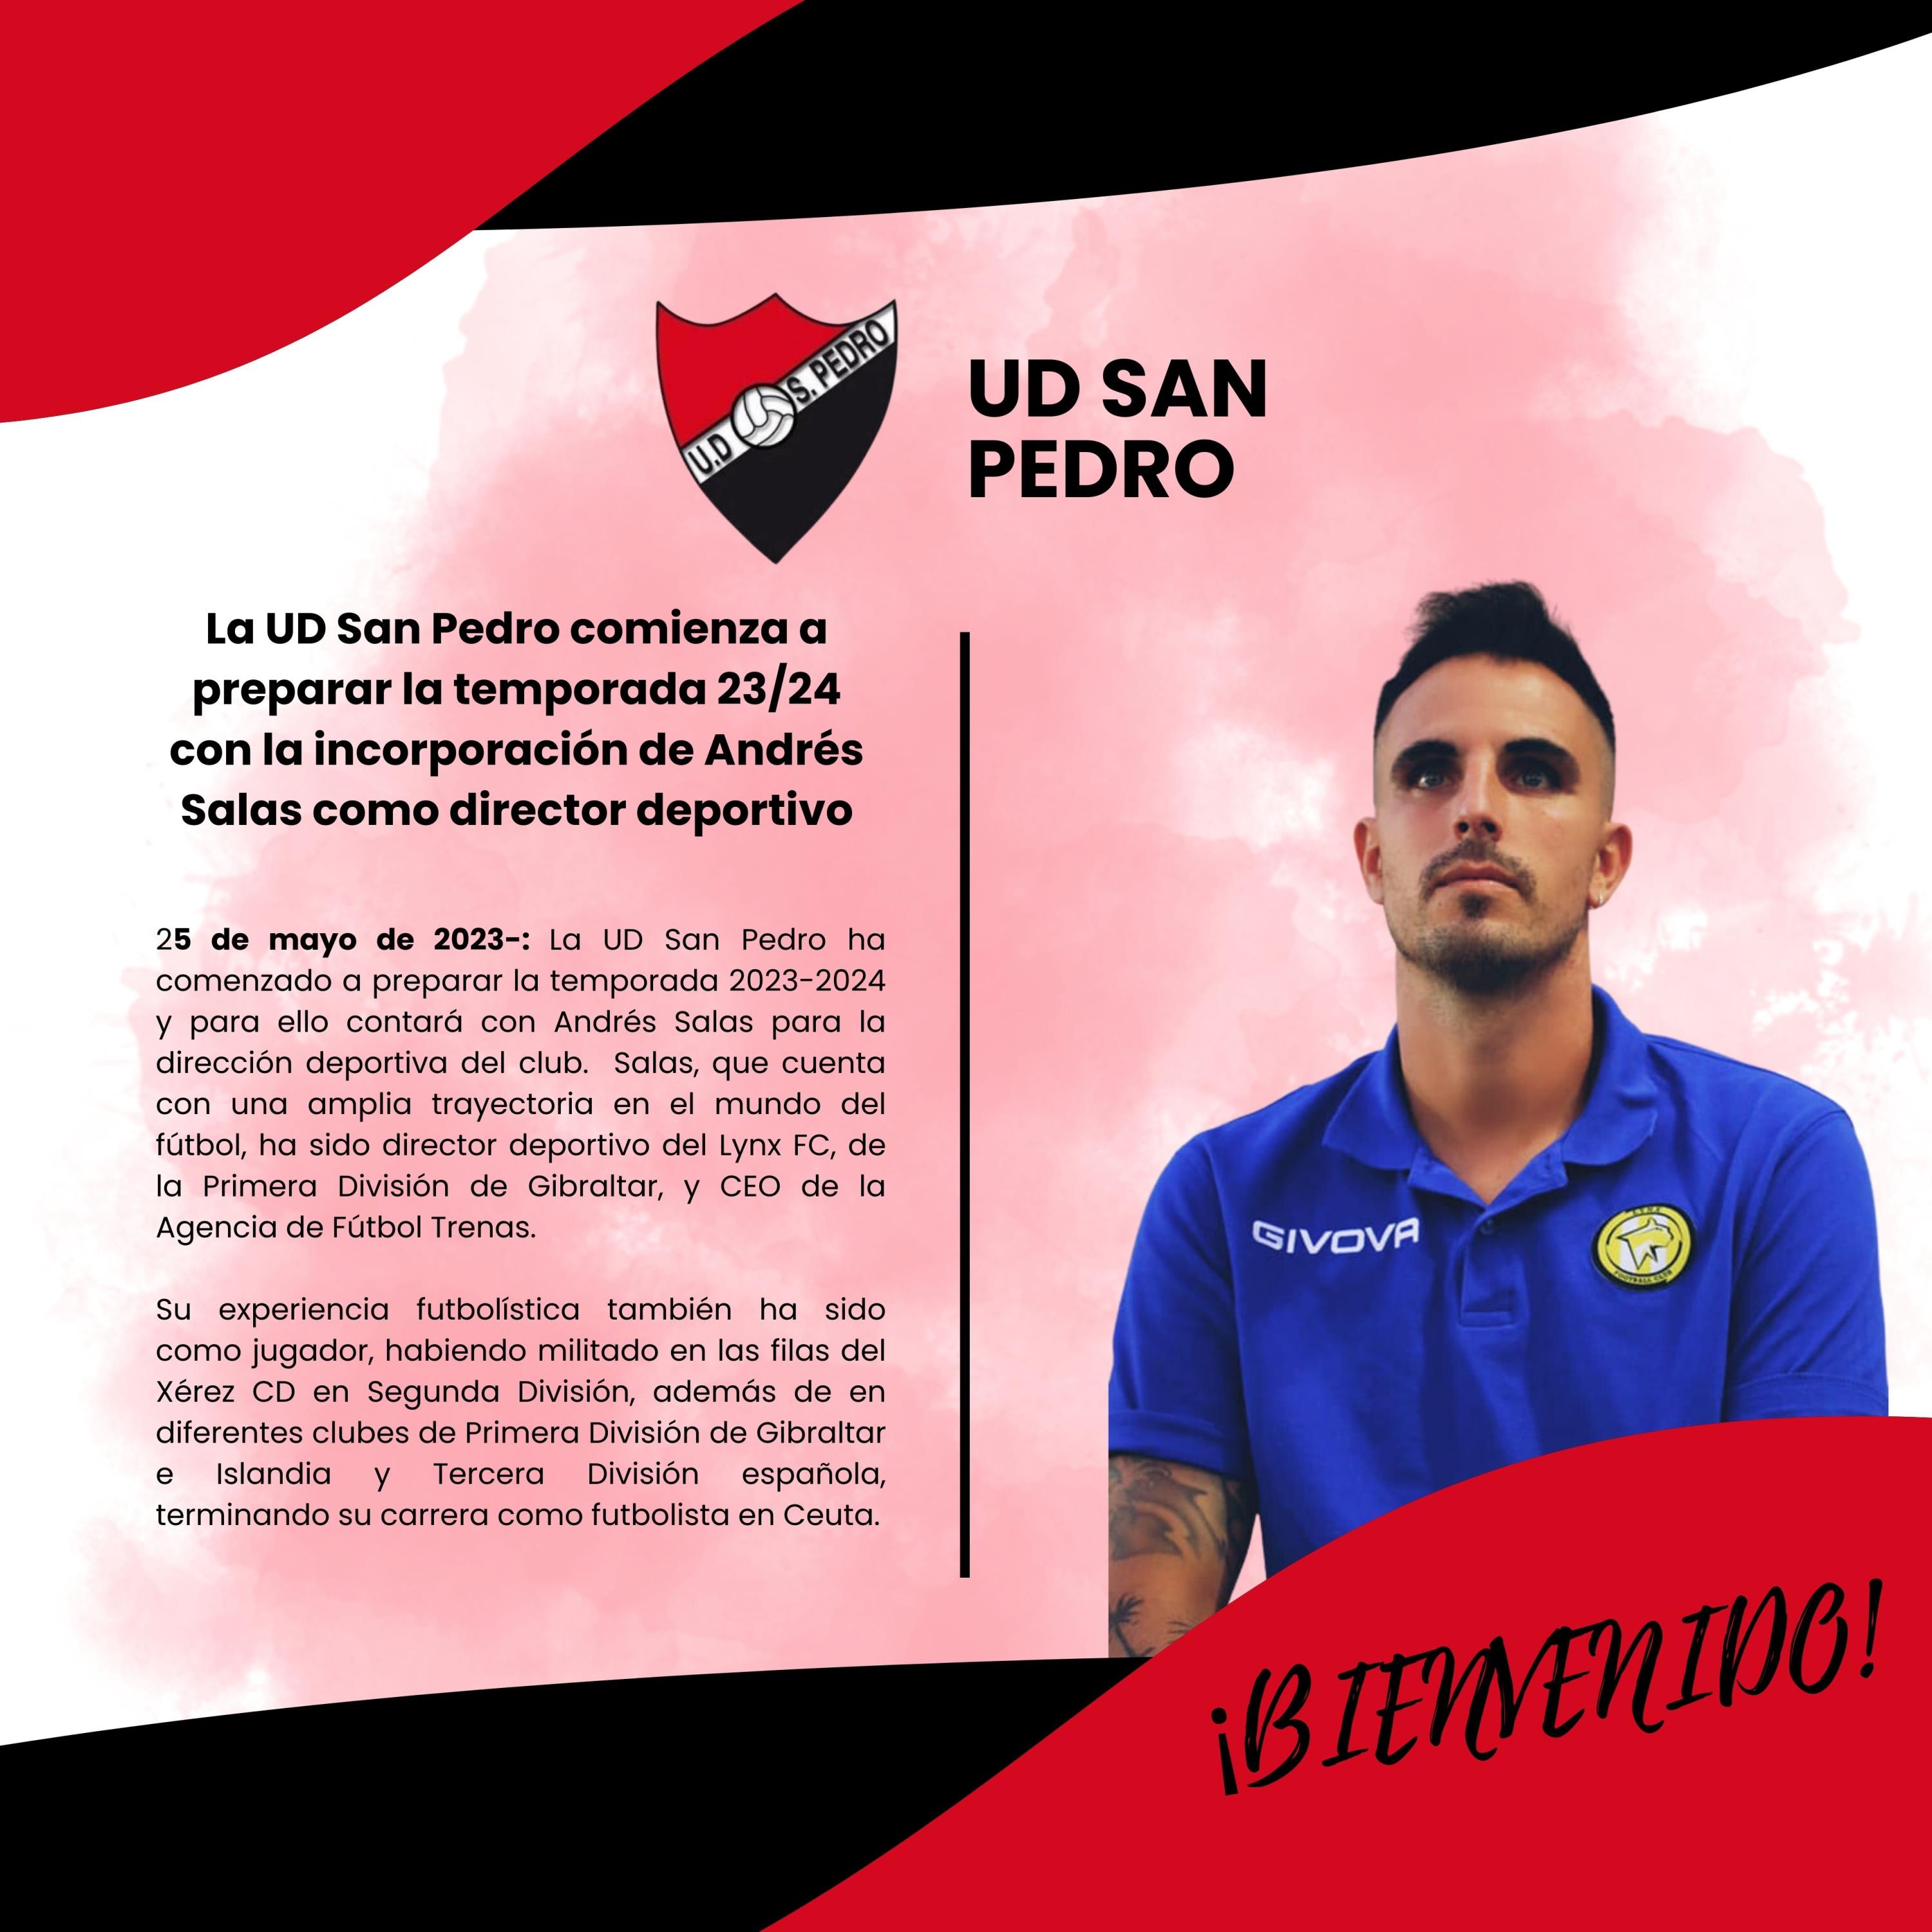 La UD San Pedro comienza a preparar la temporada 23/24 con la incorporación de Andrés Salas como director deportivo